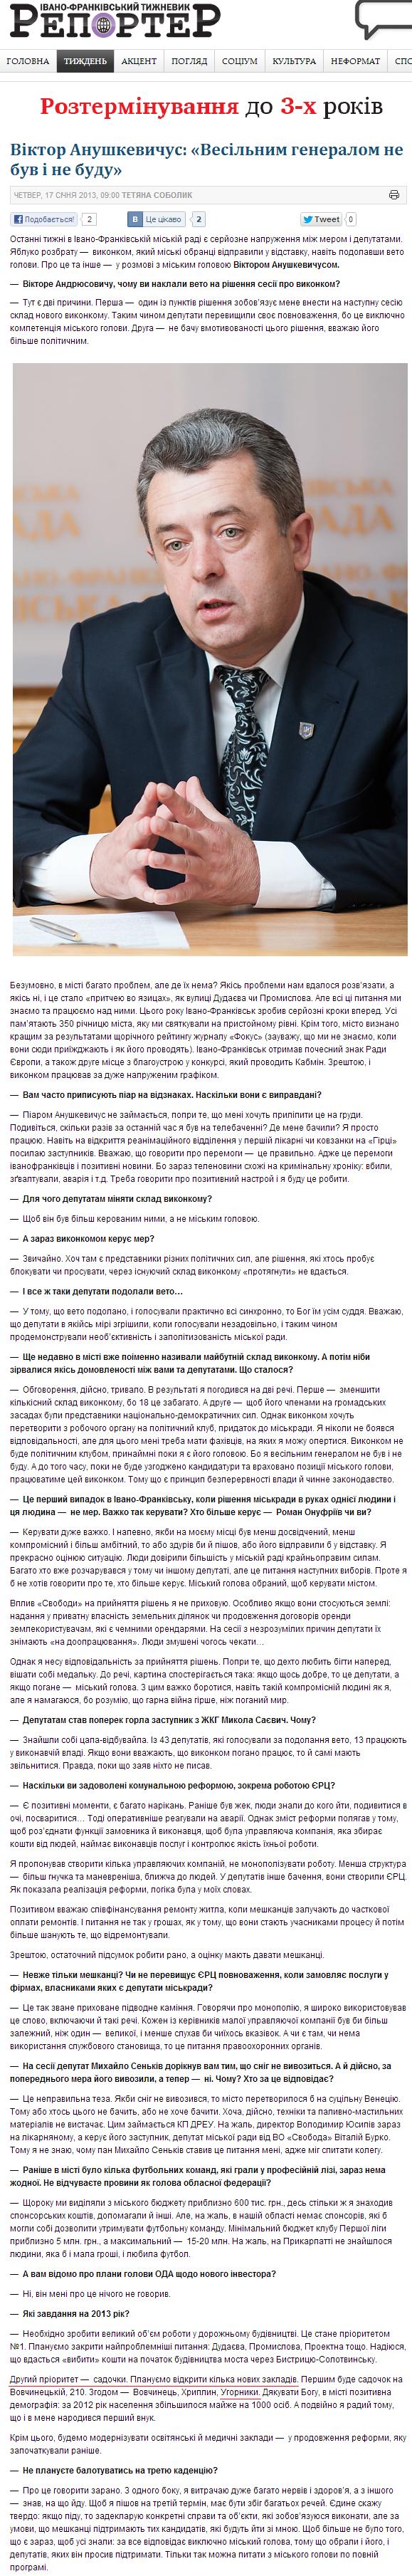 http://www.report.if.ua/poglyad/poglyad/viktor-anushkevychus-vesilnym-generalom-ne-buv-i-ne-budu